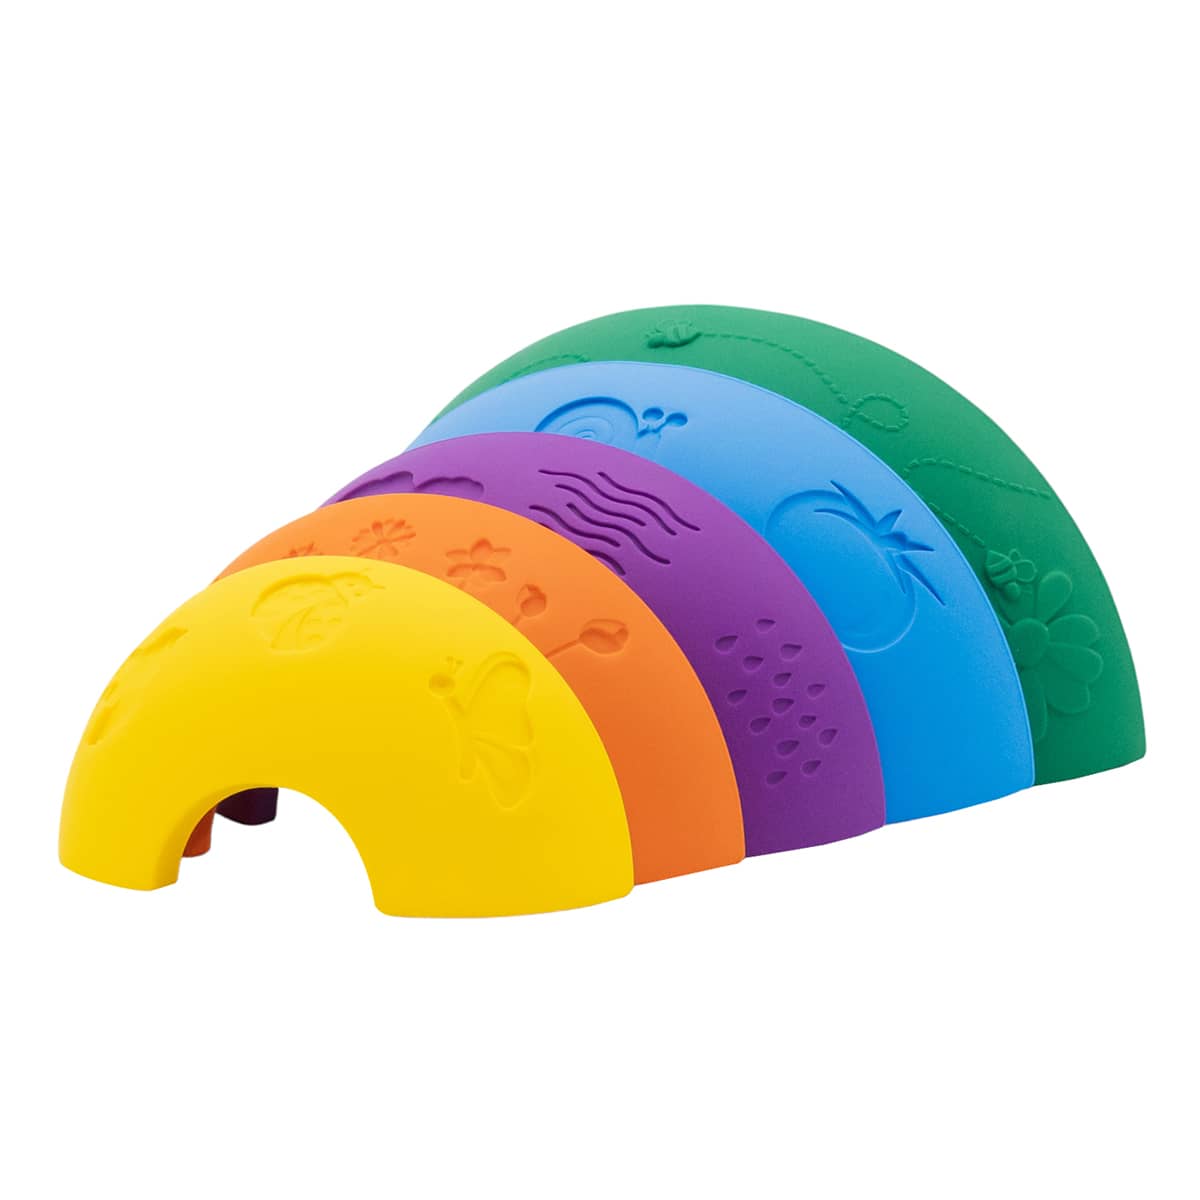 Jellystone Designs Over the Rainbow Silicone Arches - Bright